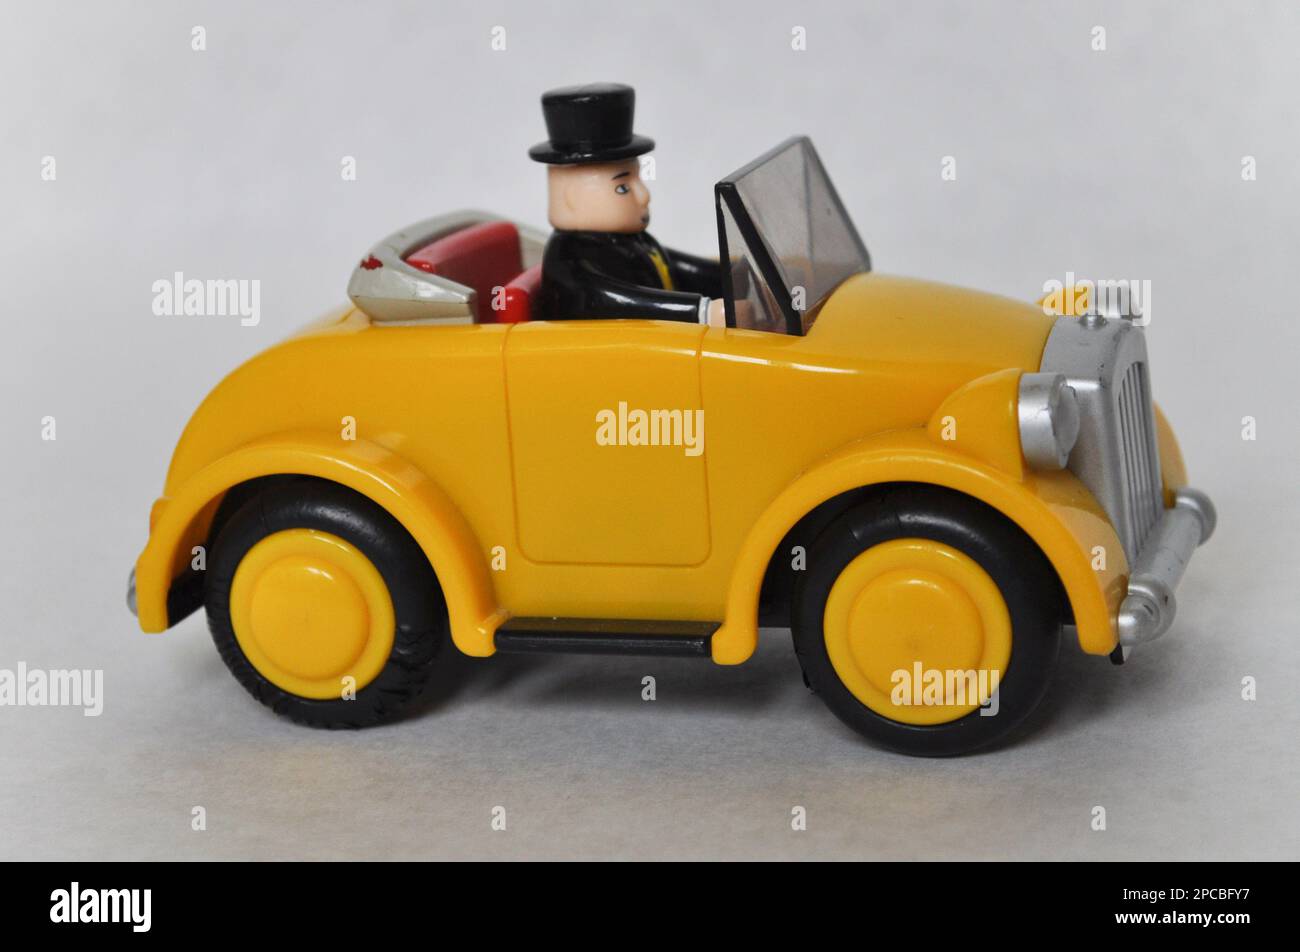 Sir Topham Hatt (le contrôleur de graisse) figure pilotant une voiture en plastique jaune de la série Thomas le moteur de réservoir Banque D'Images